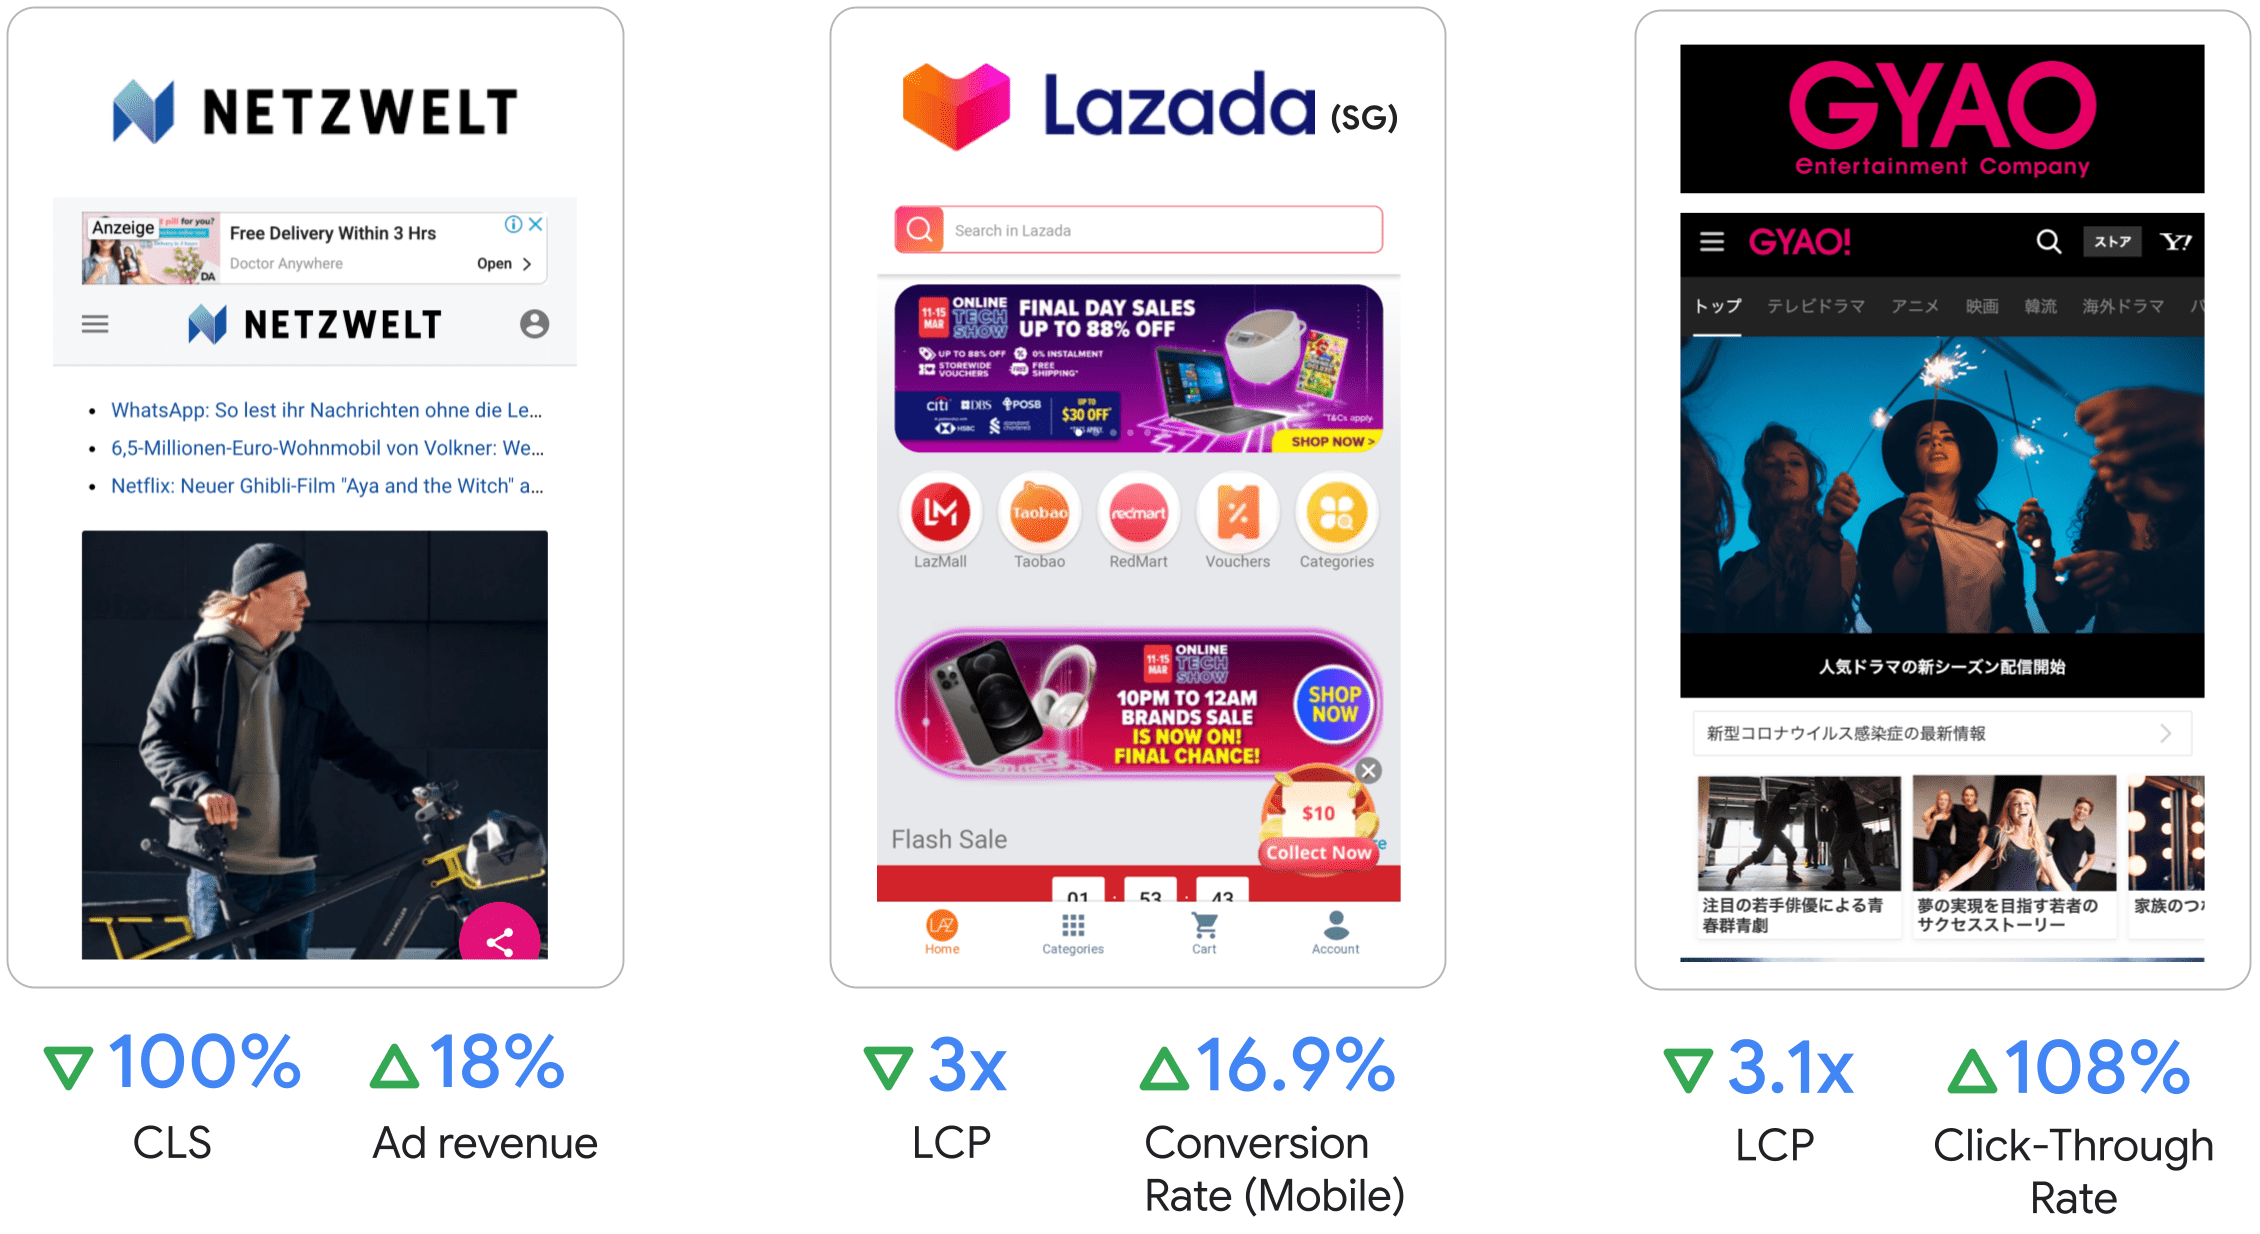 Netzwelt ने विज्ञापन से होने वाली आय में 18 प्रतिशत, Lazada ने मोबाइल पर